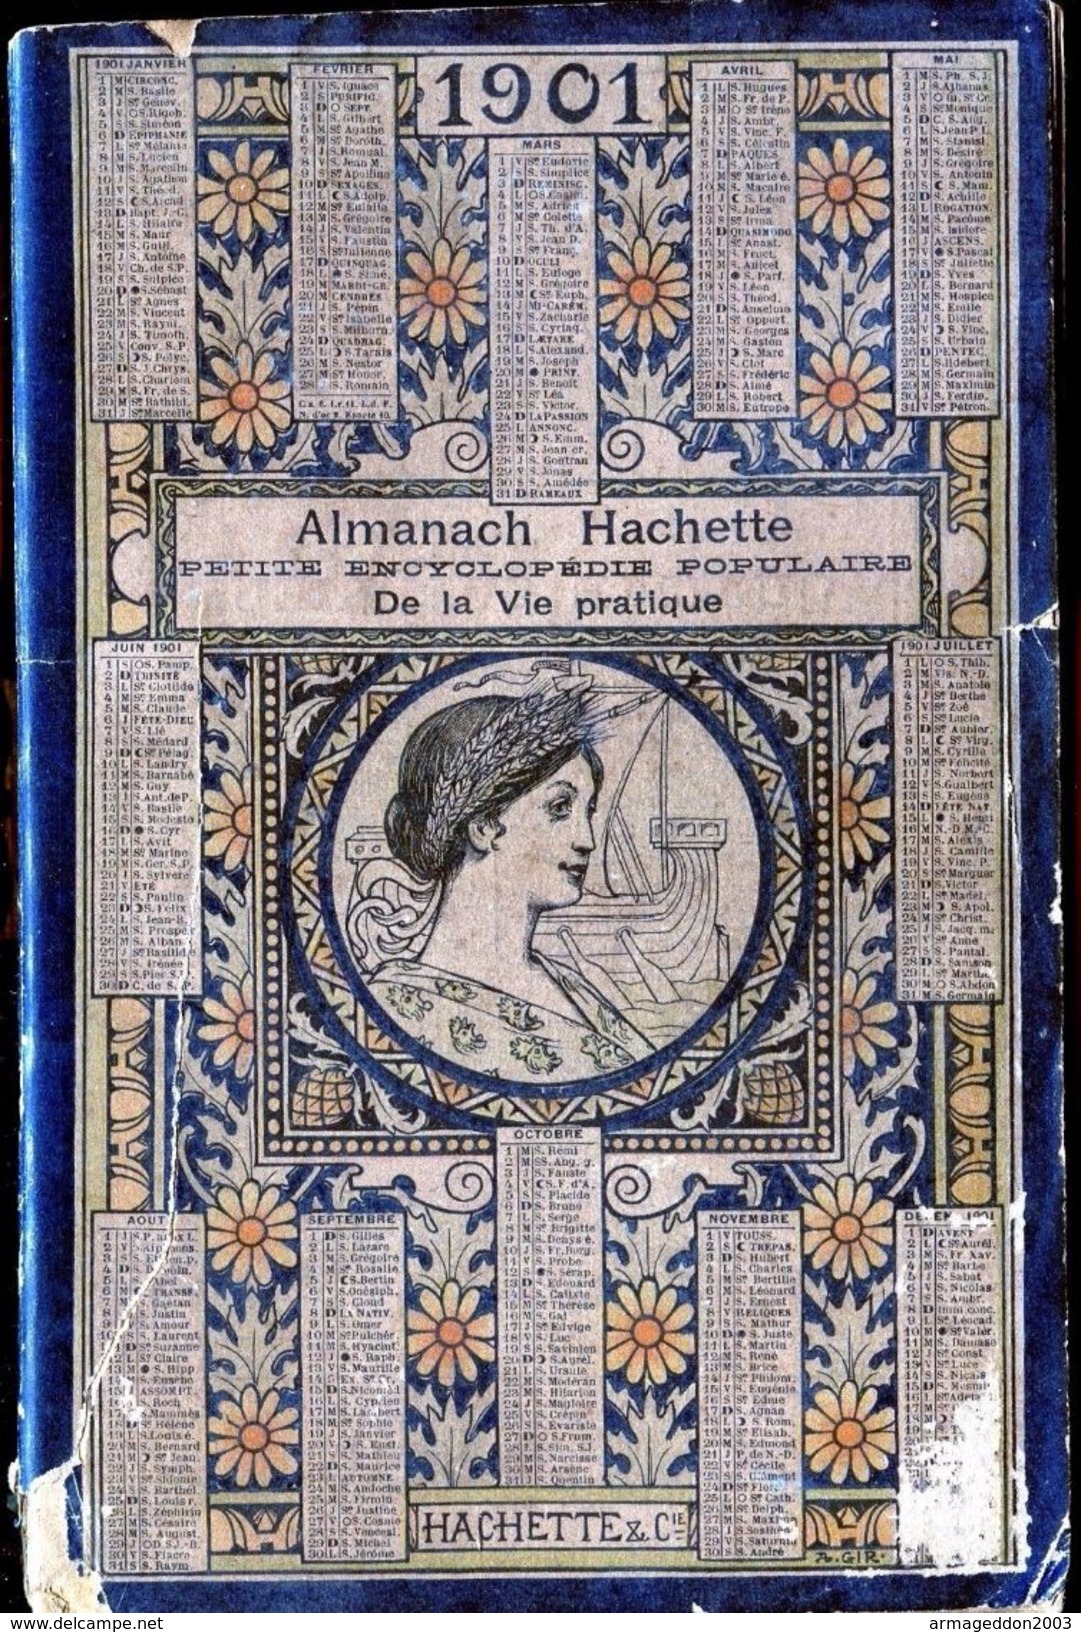 ALMANACH HACHETTE - 1901 Petite Encyclopédie Populaire De La Vie Pratique - Formato Grande : 1901-20